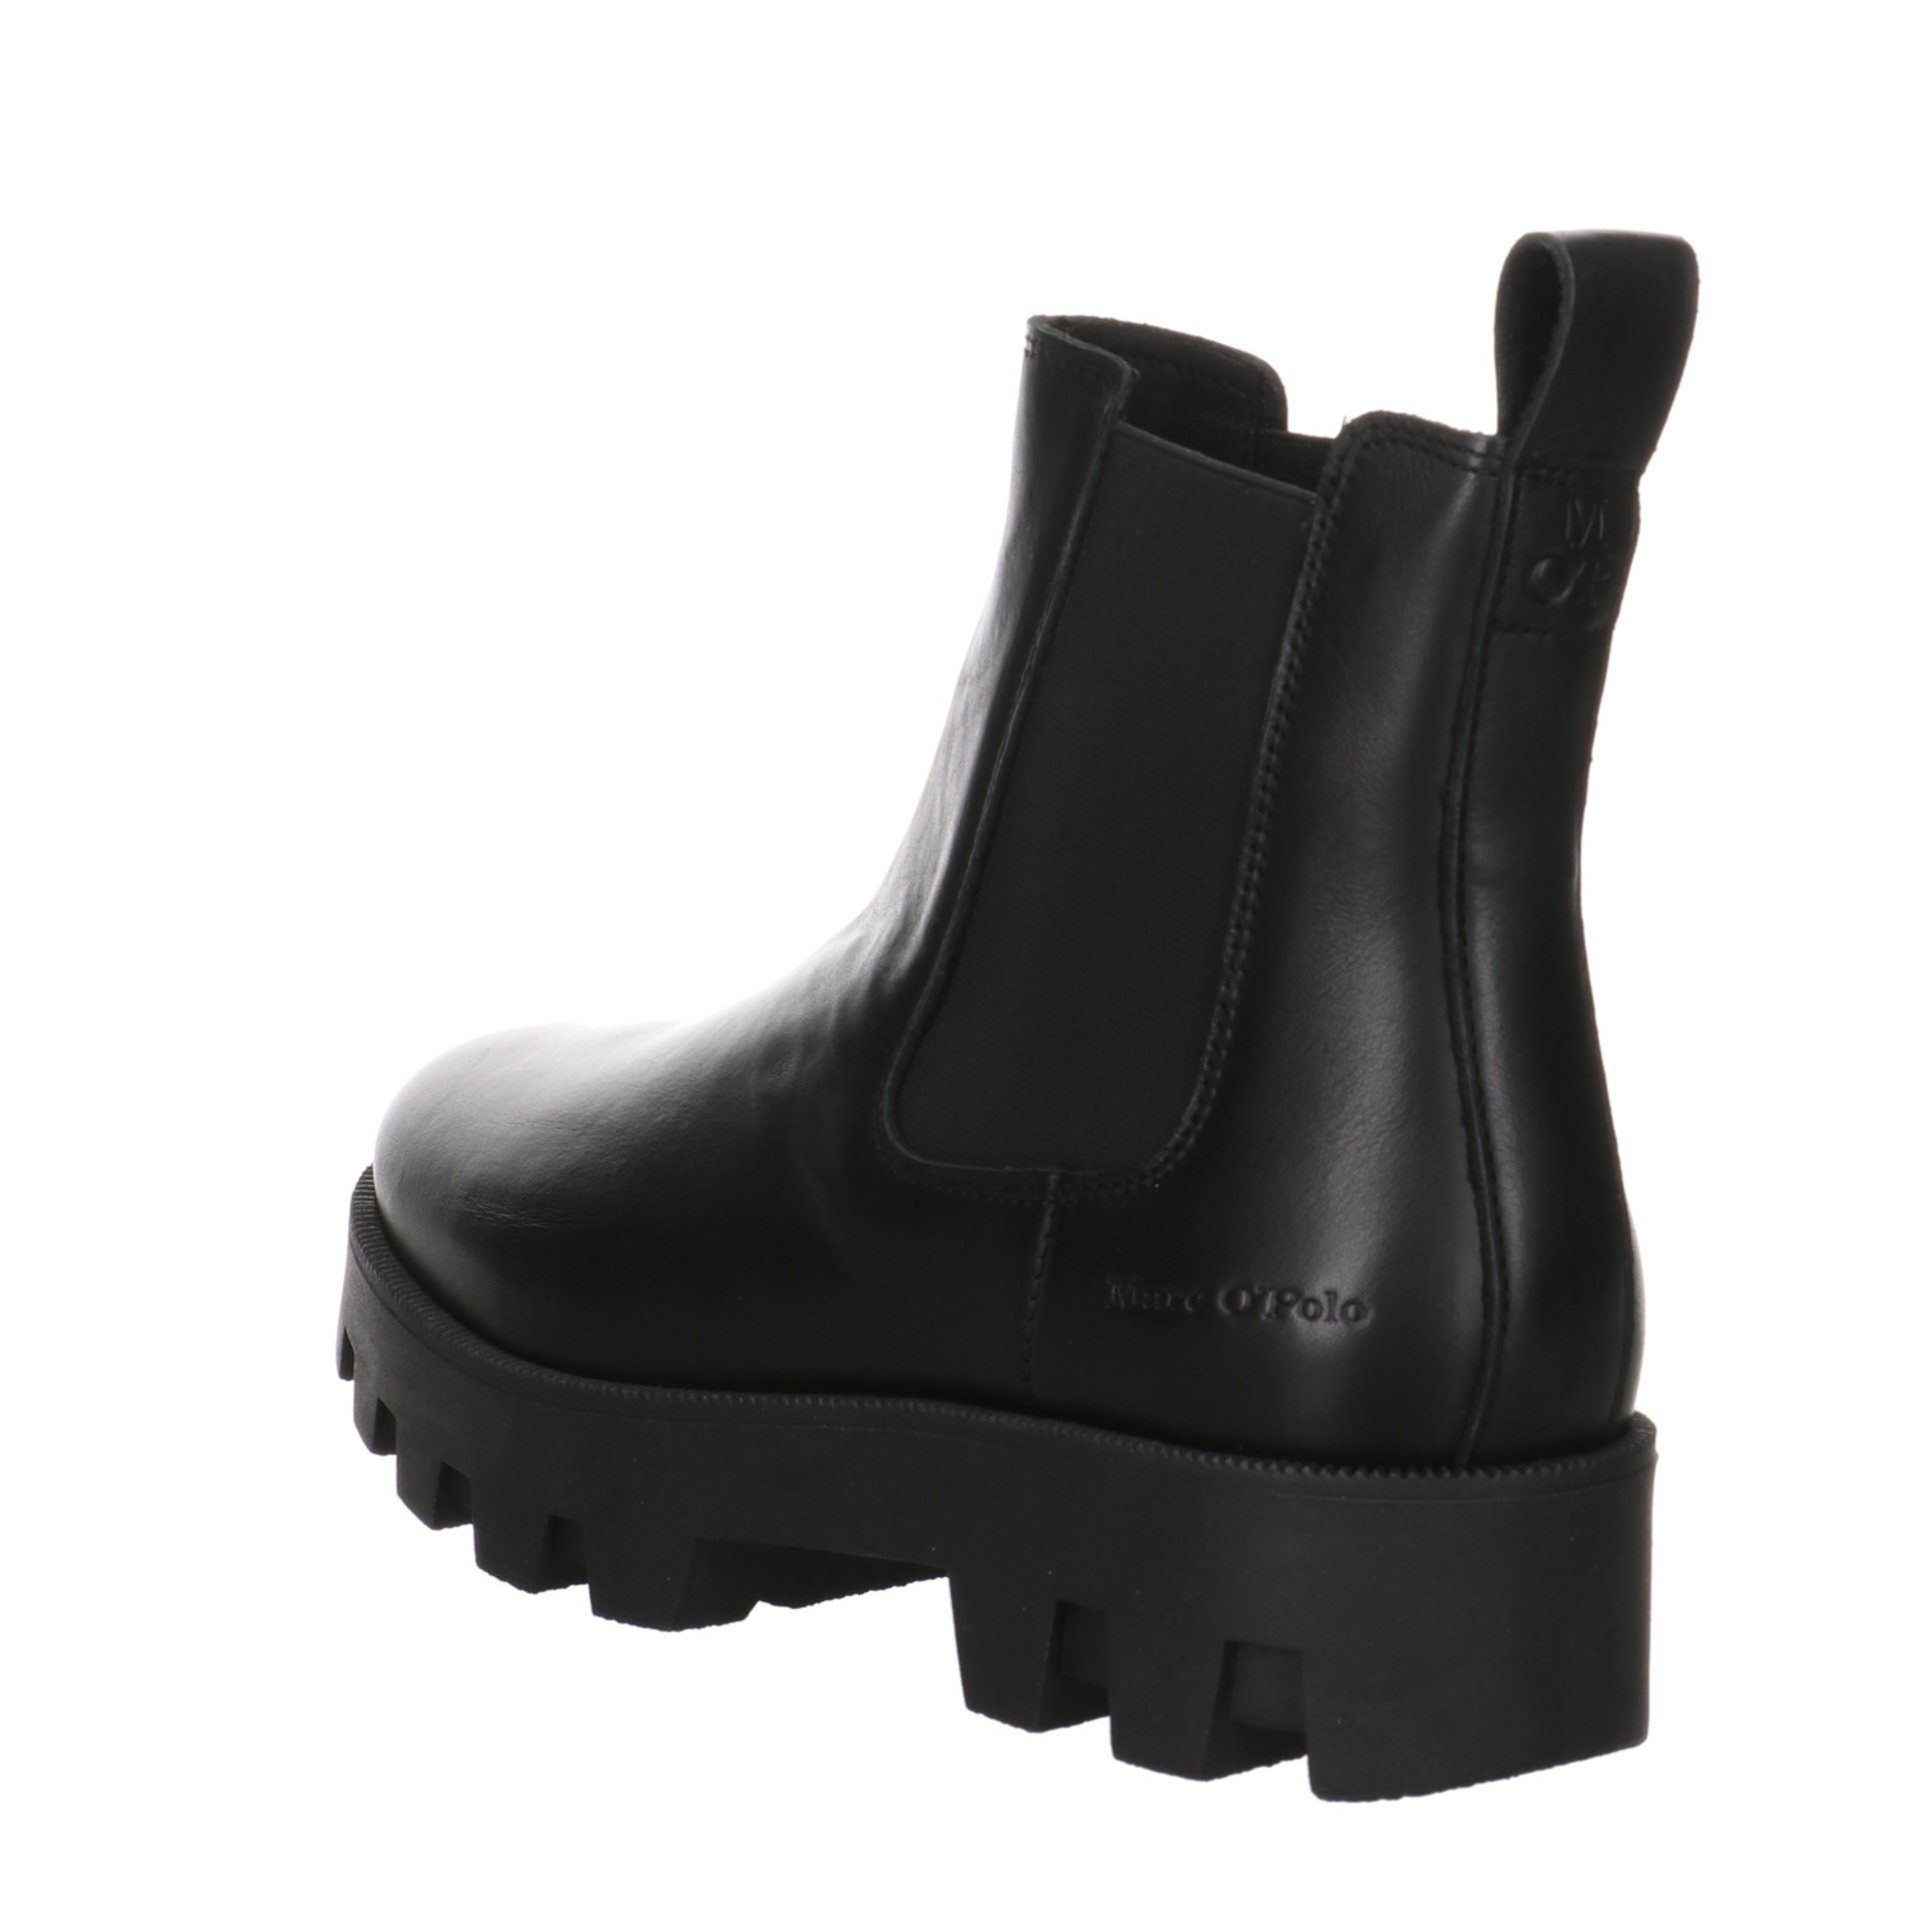 Schuhe Chelsea-Boots Leder-/Textilkombination Stiefeletten Damen O'Polo Marc Stiefelette